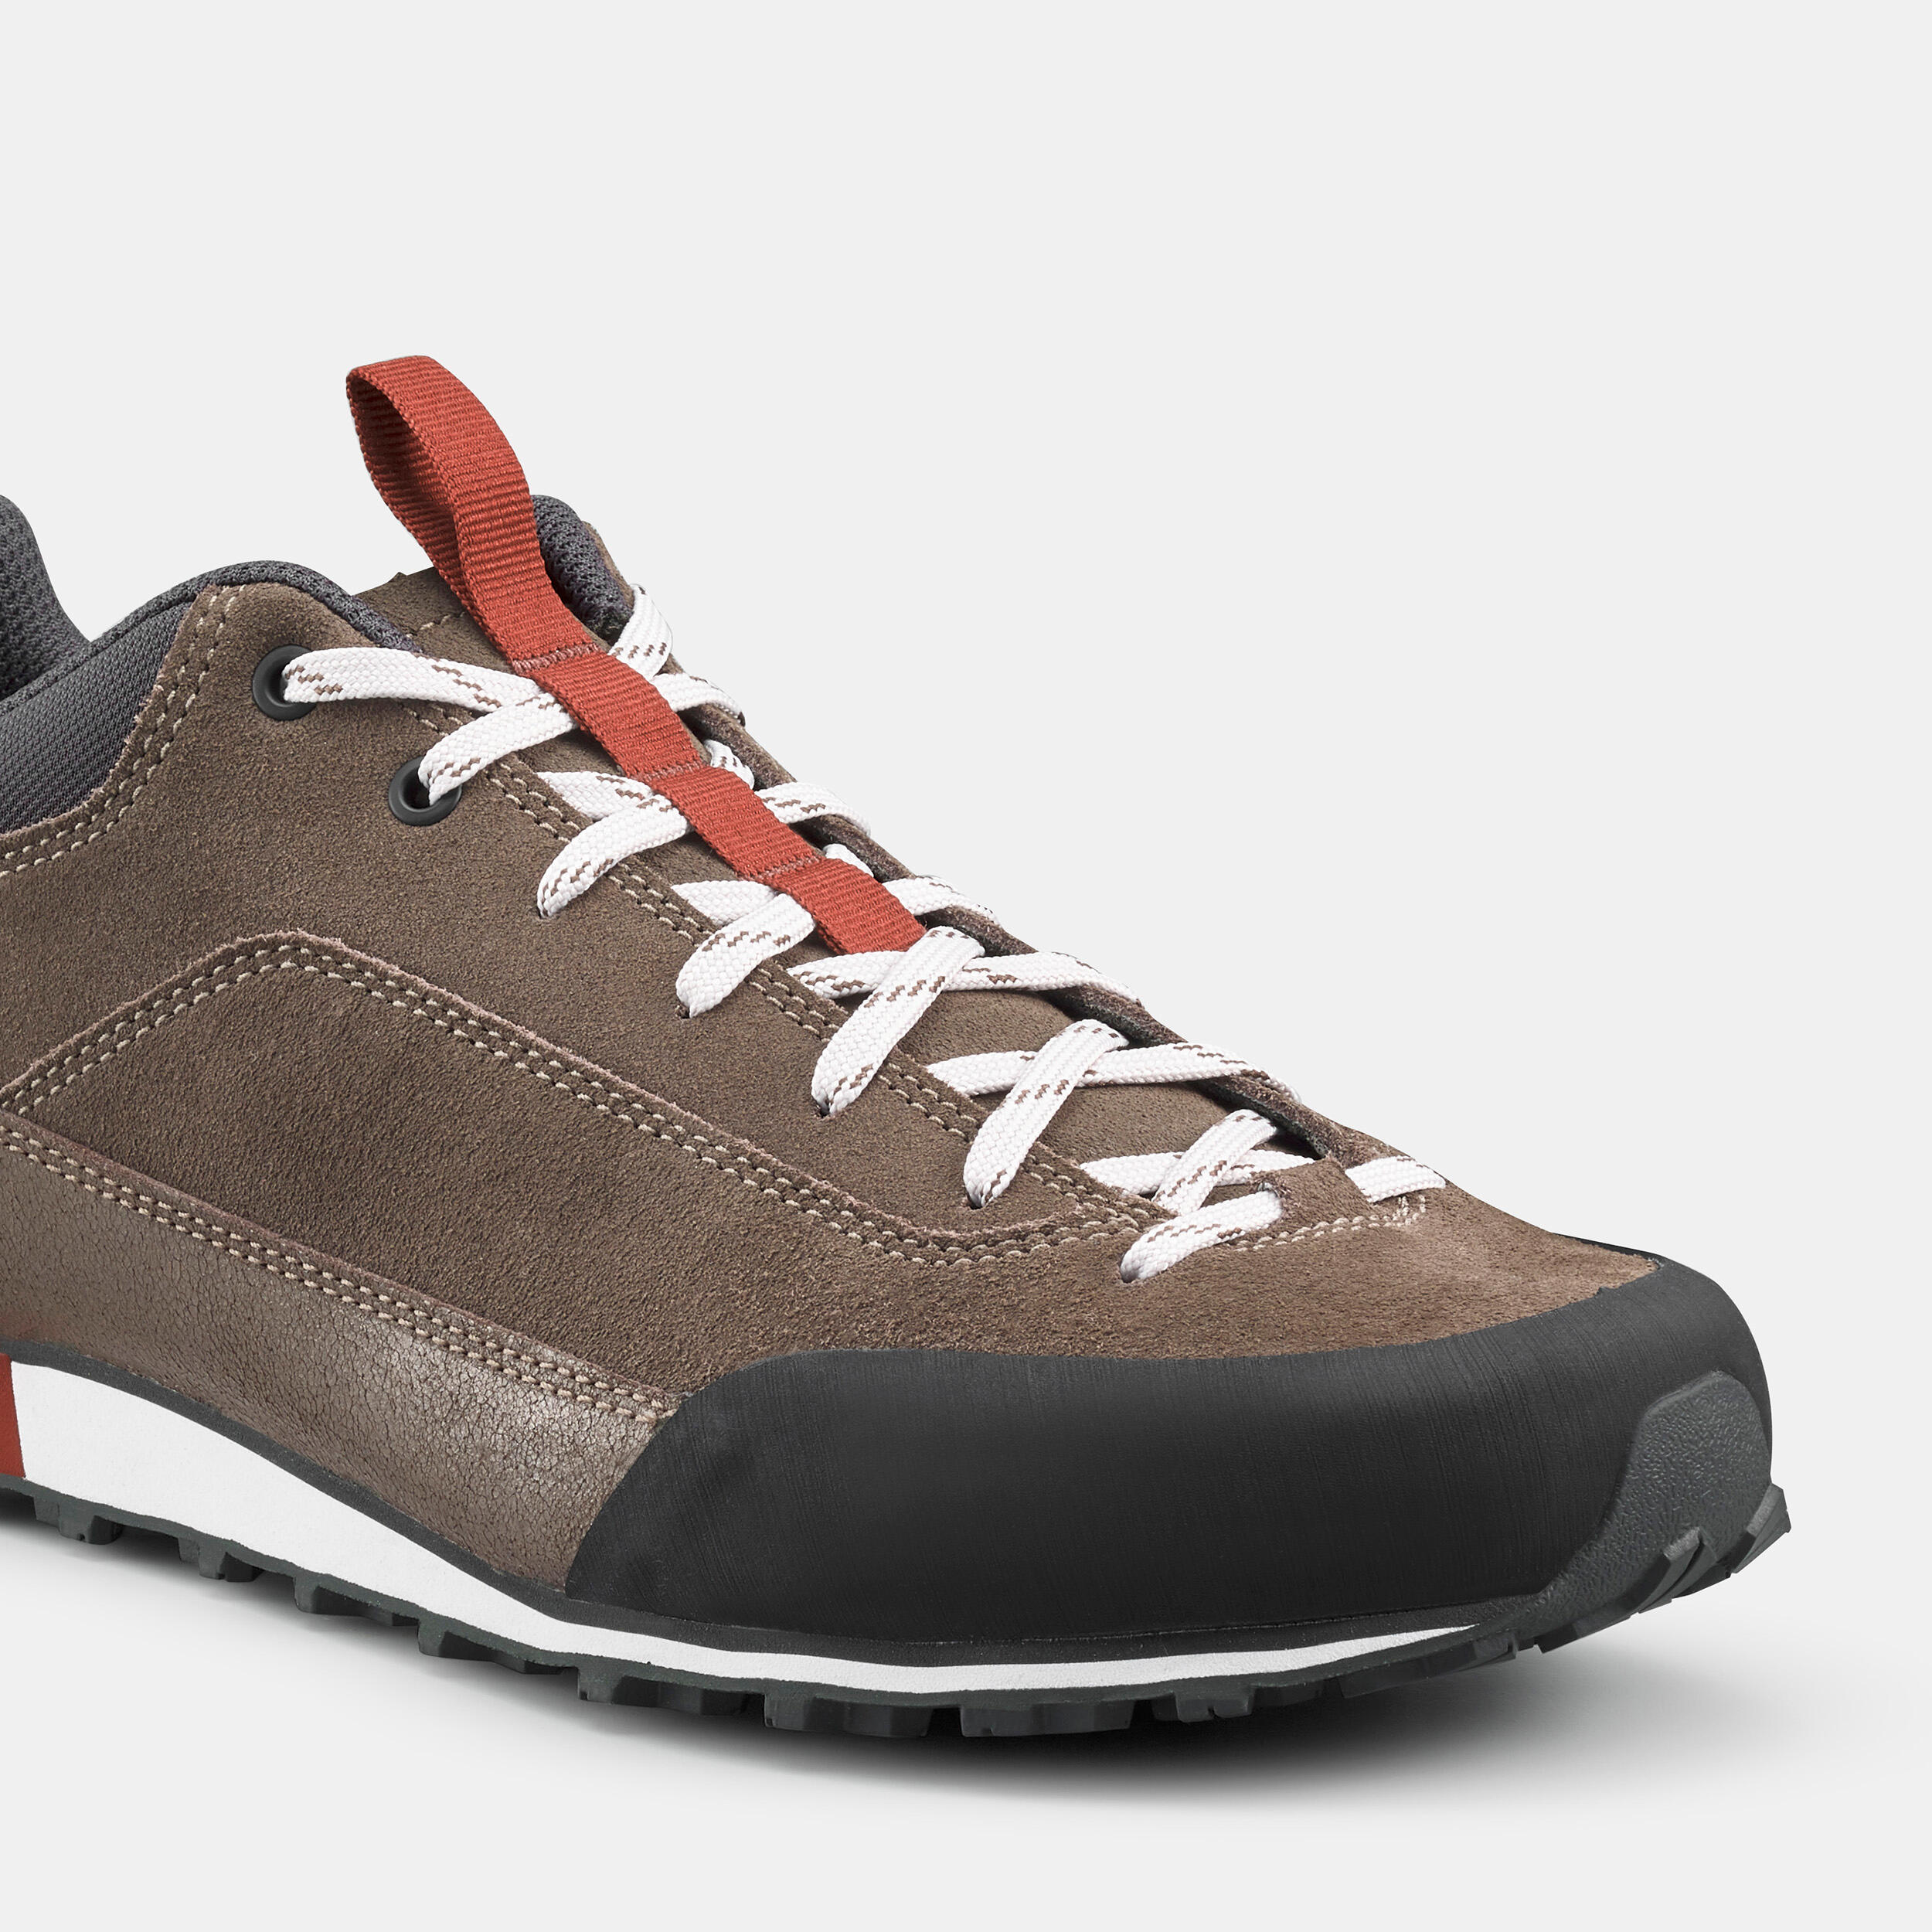 Men's Hiking shoes - ARPENAZ 500 REVIVAL 7/8